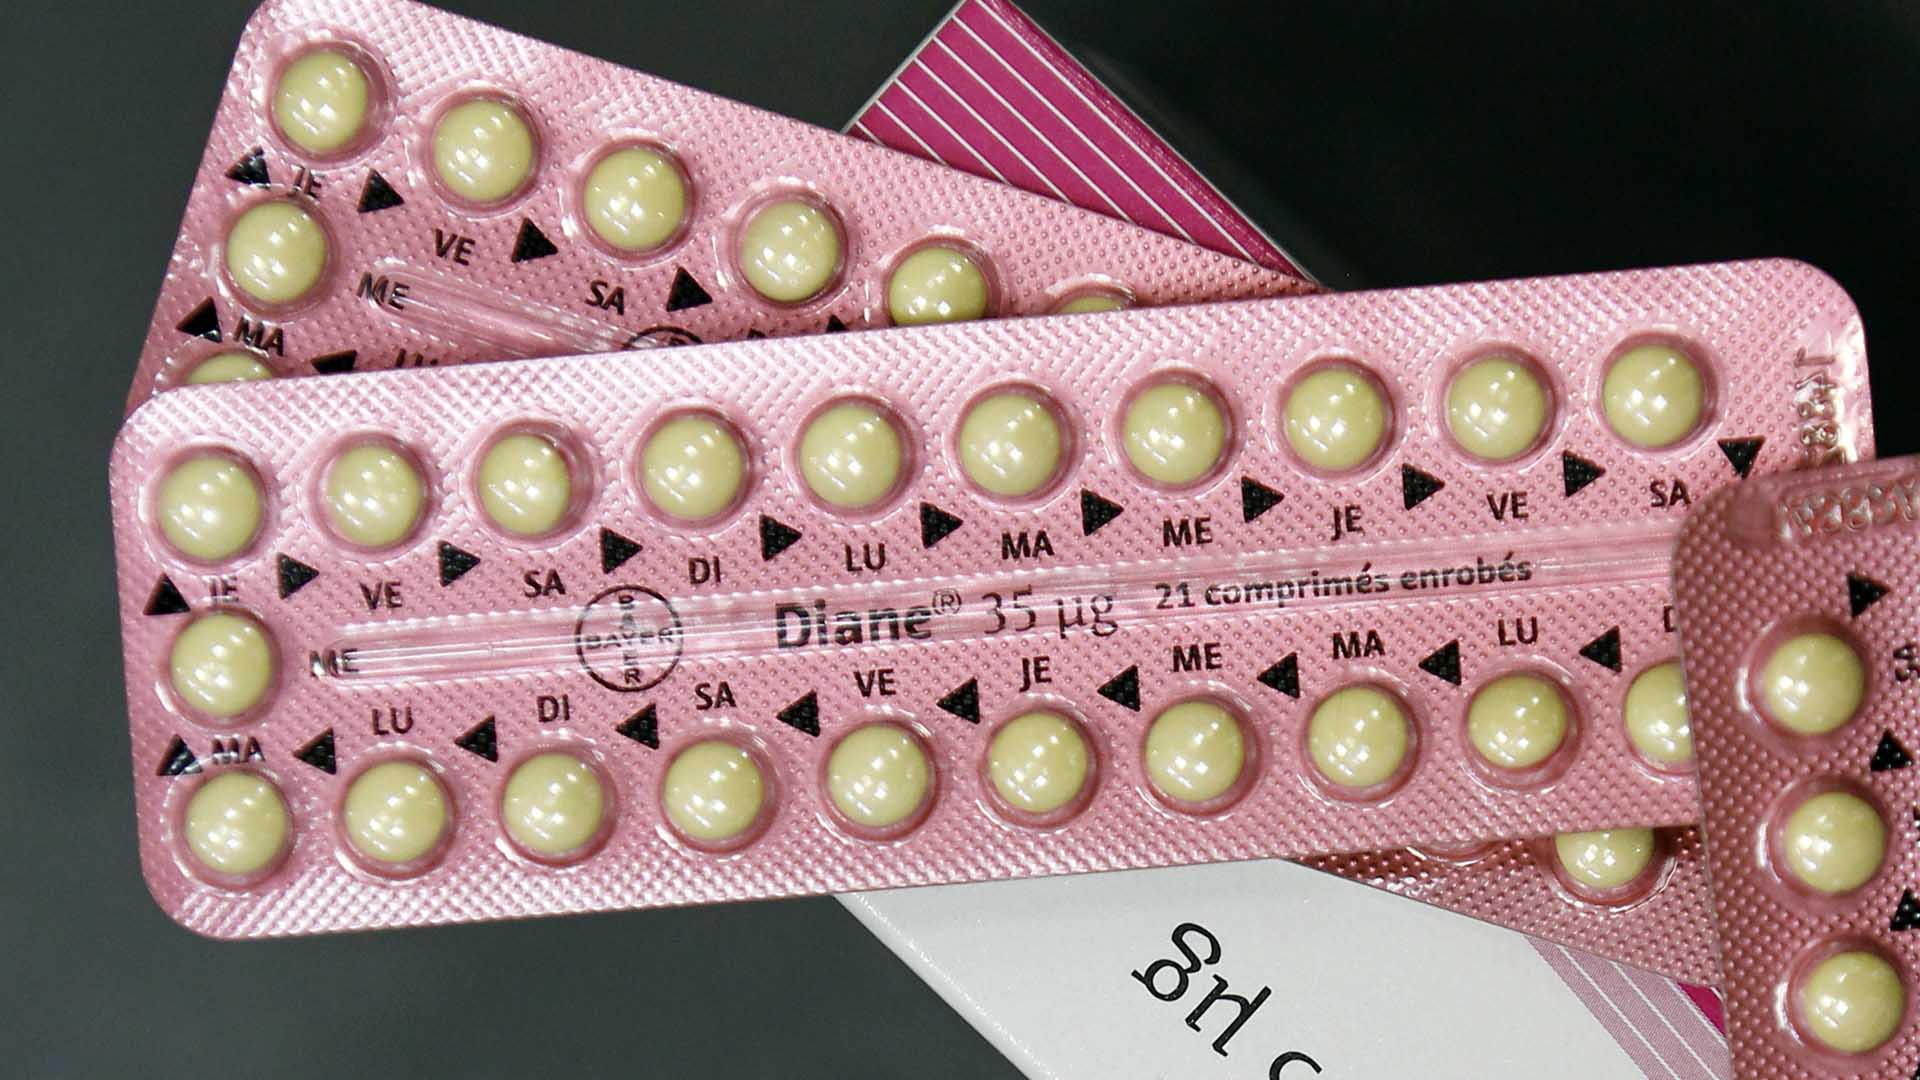 ¿Es cierto que existen pastillas anticonceptivas que también sirven para adelgazar?